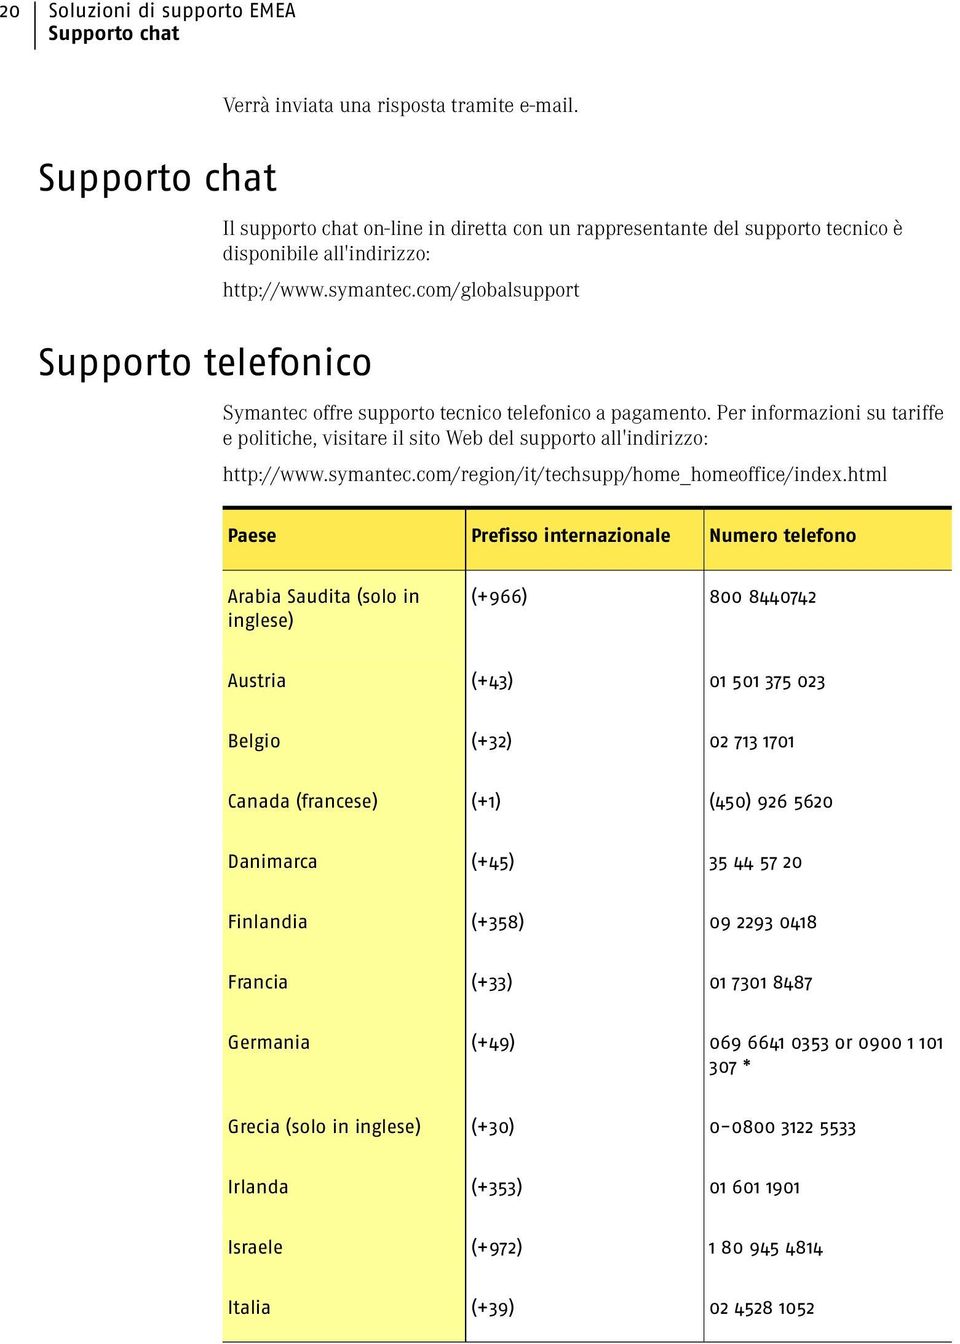 com/globalsupport Symantec offre supporto tecnico telefonico a pagamento. Per informazioni su tariffe e politiche, visitare il sito Web del supporto all'indirizzo: http://www.symantec.